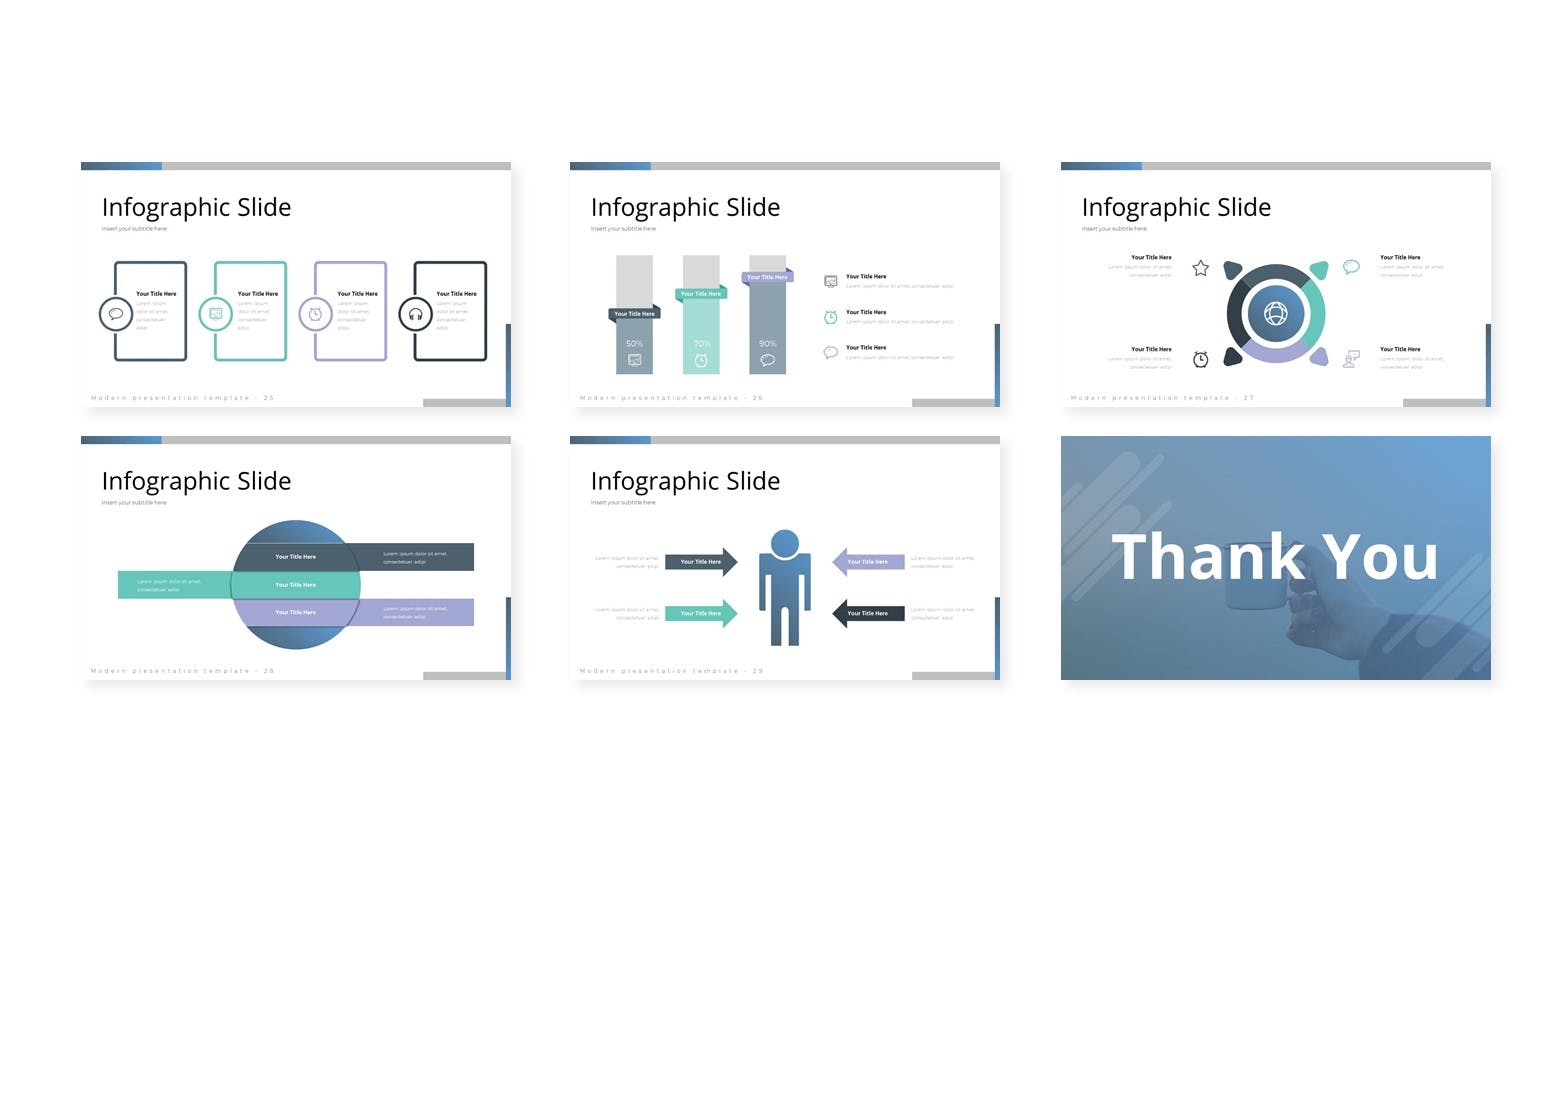 小清新设计排版PowerPoint模板合集 Wondero – Powerpoint Template设计素材模板